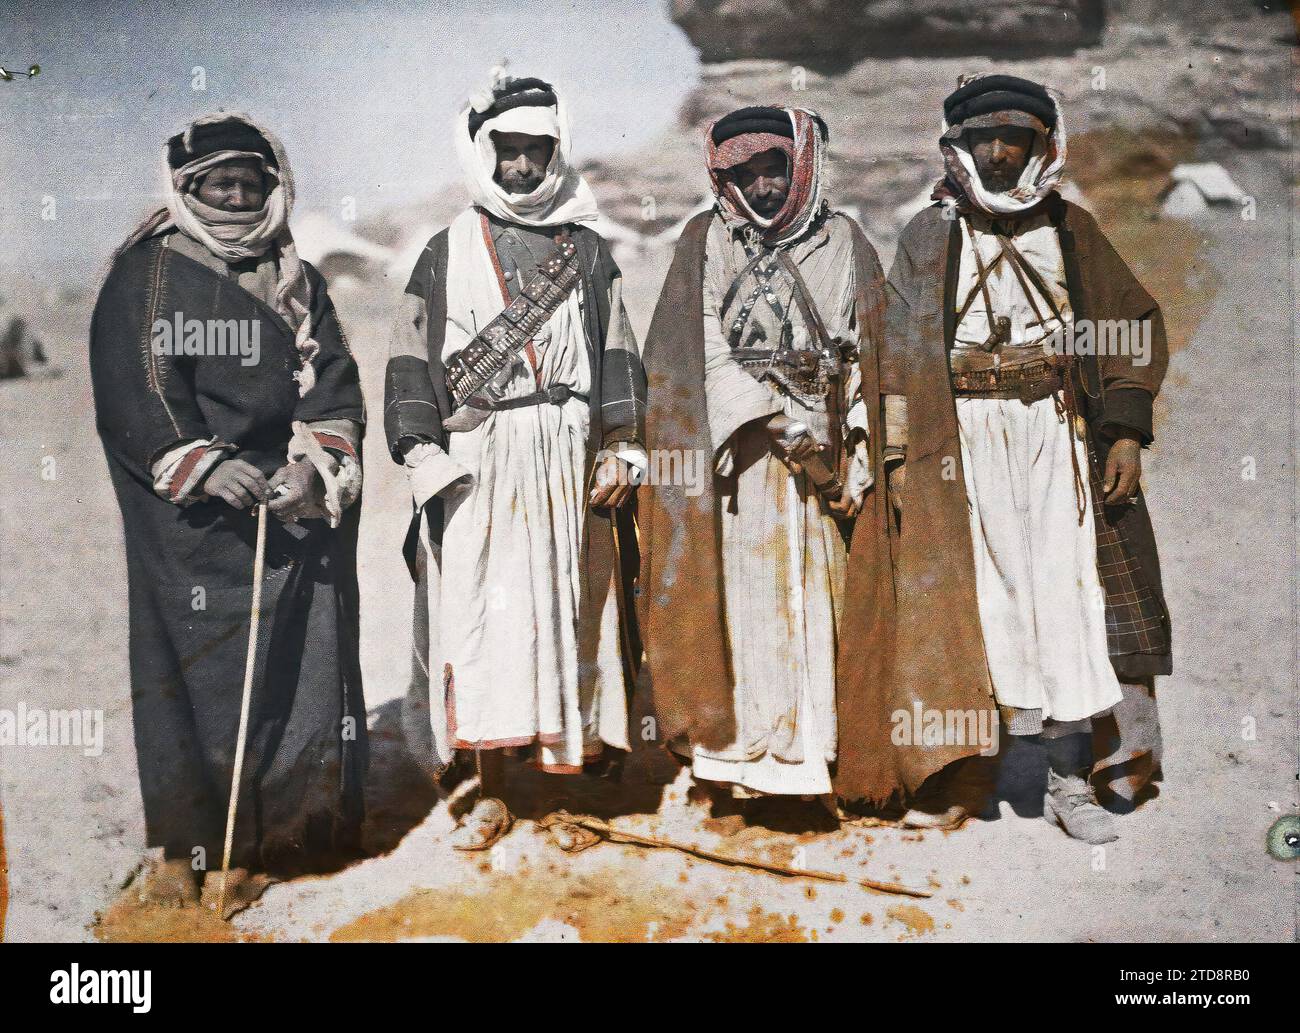 Quweira, Arabia (attuale Giordania) gruppo di combattenti delle forze arabe del Regno di Hejaz, abbigliamento, popolo, costume, beduino, ritratto di gruppo, accessorio, arma, cintura, acconciatura, copricapo, Man, Arabia, Gouaira, gruppo di beduini a Gouaira, al-Quwayrah, 02/03/1918 - 02/03/1918, Castelnau, Paul, 1918 - Medio Oriente, Egitto, Palestina, Chypre - Paul Castelnau (sezione fotografica dell'esercito) - (9 gennaio-6 ottobre), Autochrome, Photo, Glass, Autochrome, foto, positivo, orizzontale, dimensioni 9 x 12 cm Foto Stock